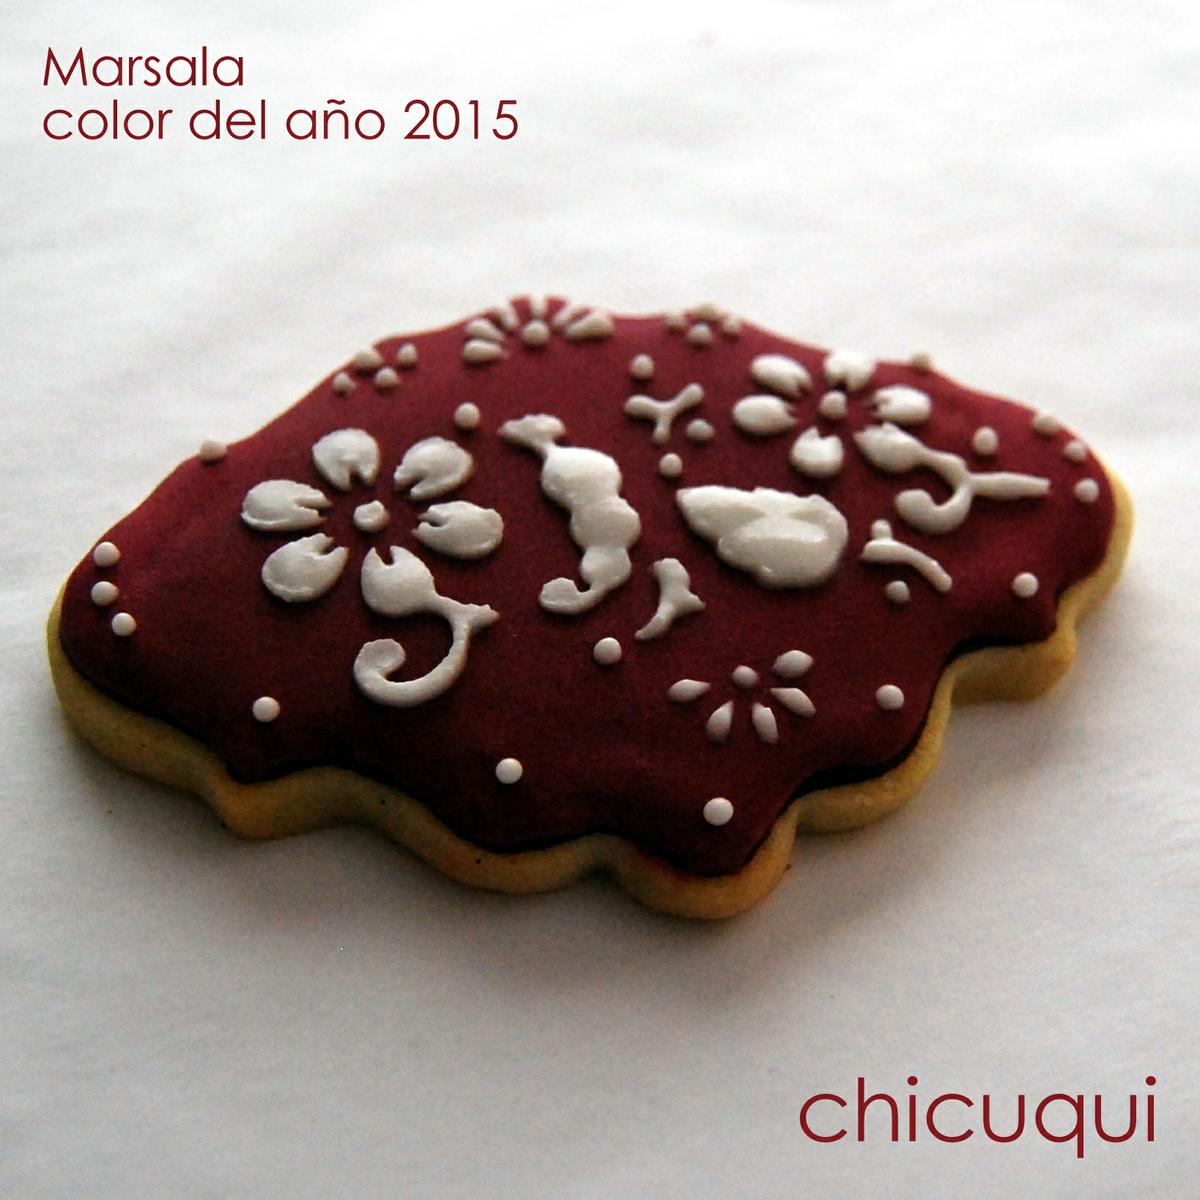 marsala color del año 2015 en galletas decoradas con stencils chicuqui.com